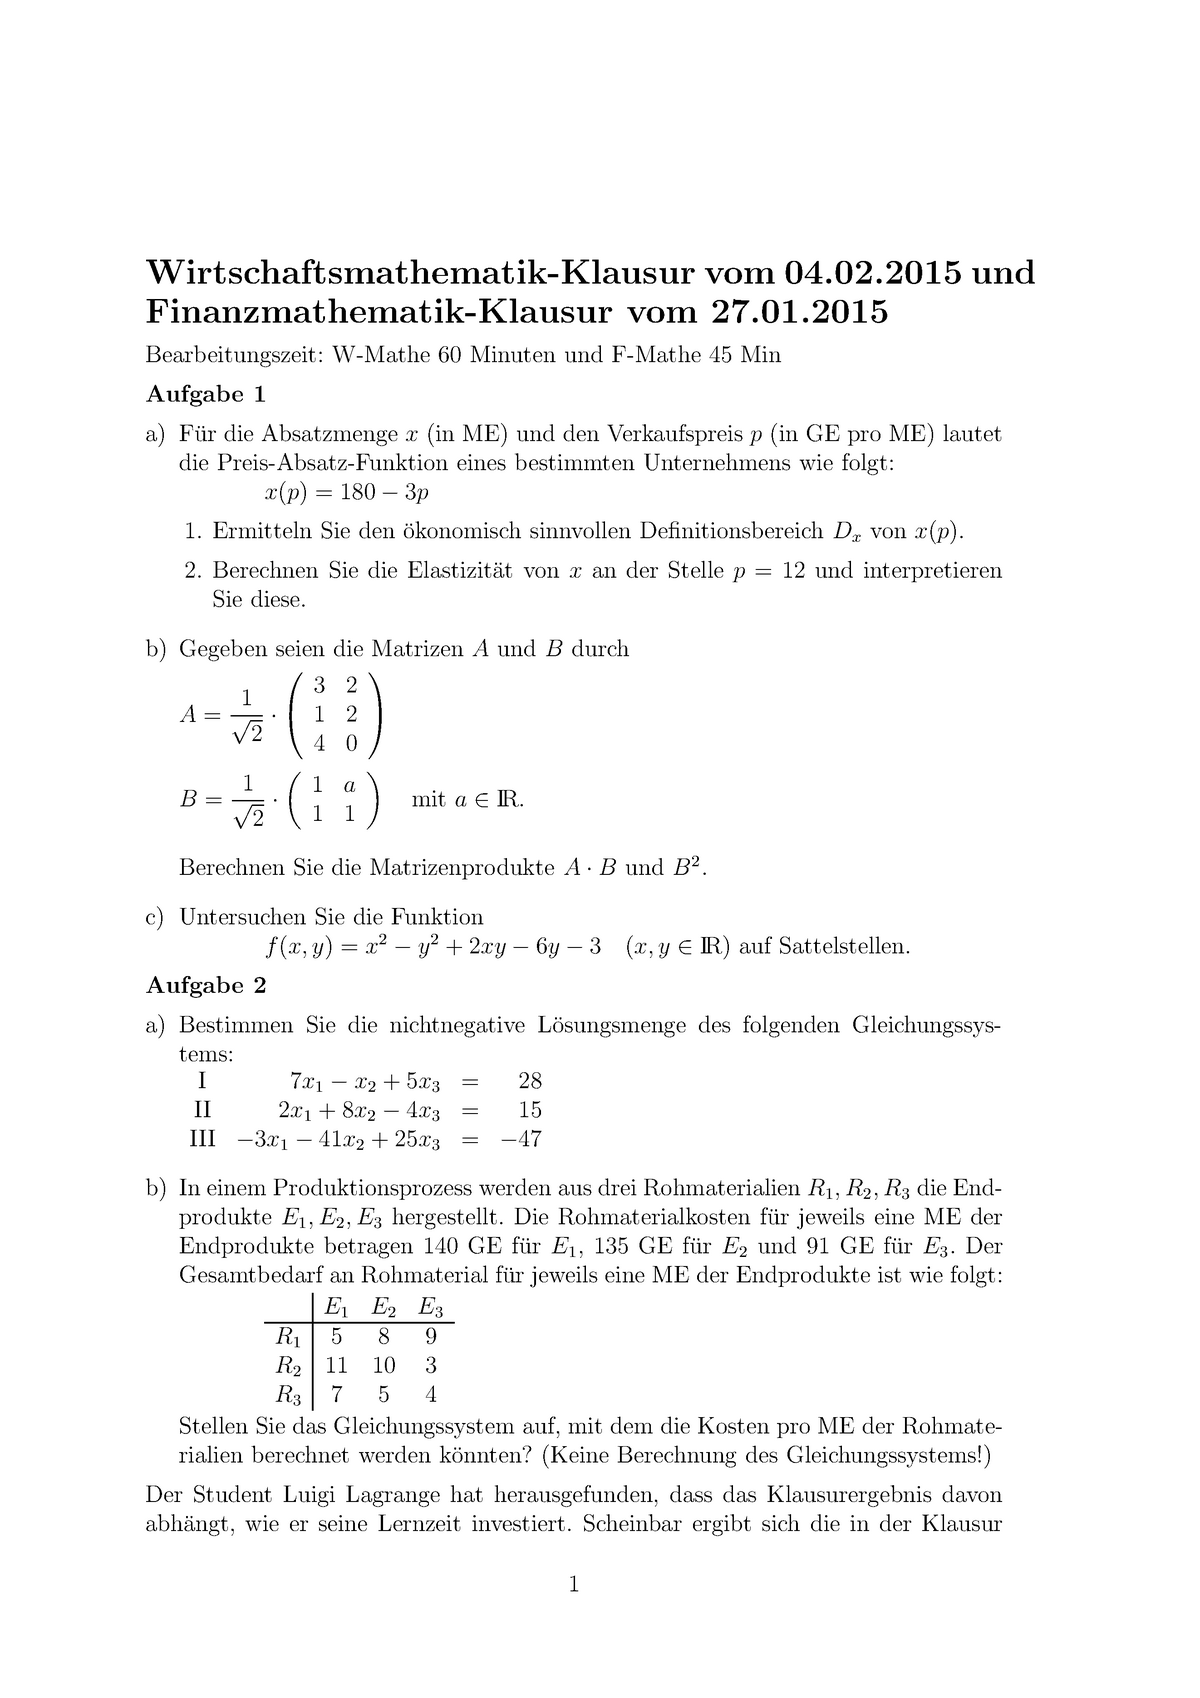 Klausur 4 Februar 2015, Fragen und Antworten - Mathe 1 ...